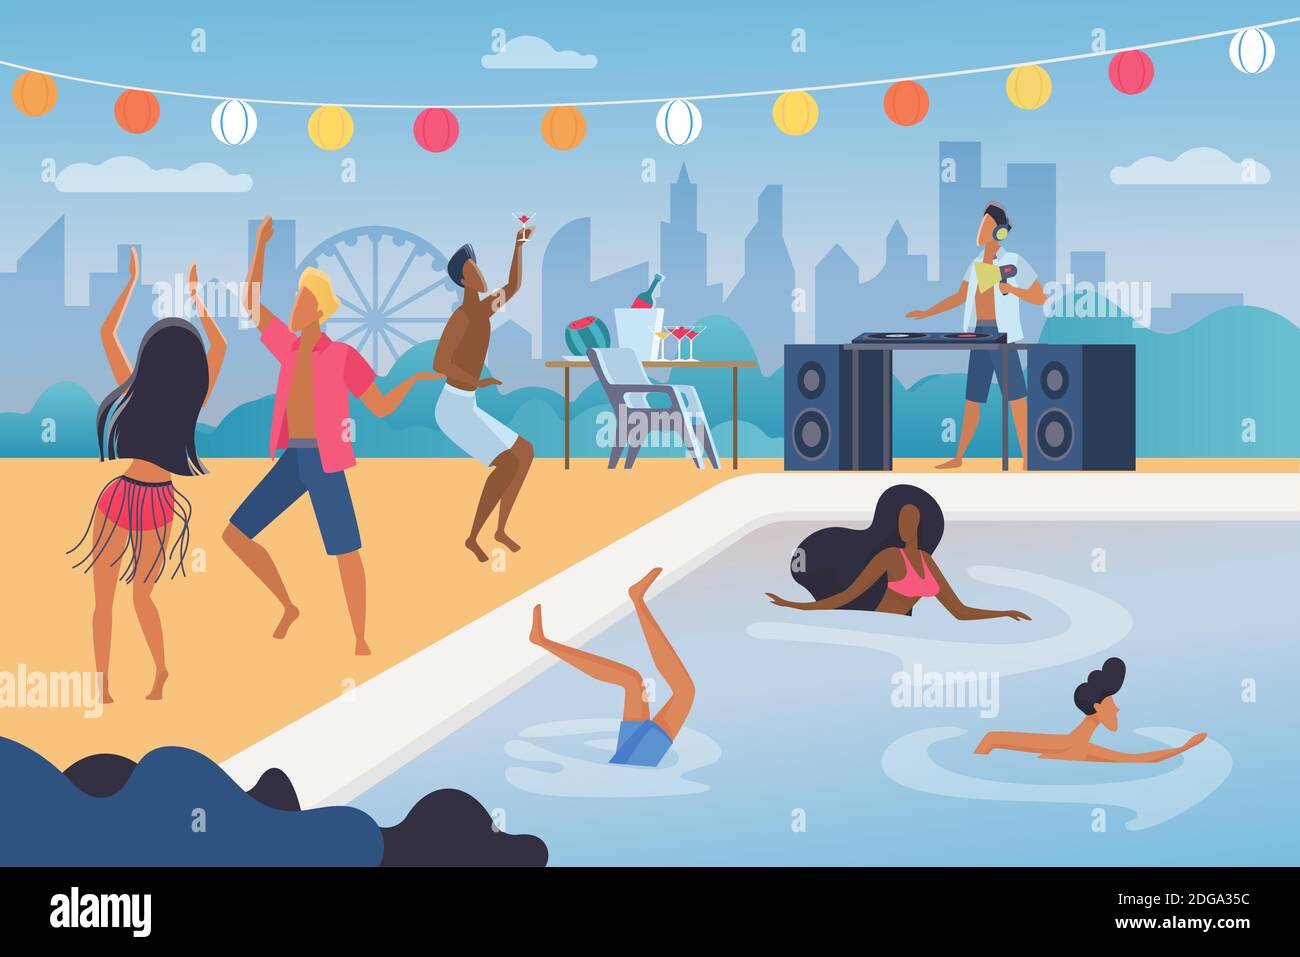 Les gens dansent dans l'illustration vectorielle de la fête de la piscine. Caricature homme heureux femme danseuse personnages dansant, sautant dans la piscine de la station aquatique, amusez-vous dans la musique tropicale plage cocktail fond Illustration de Vecteur